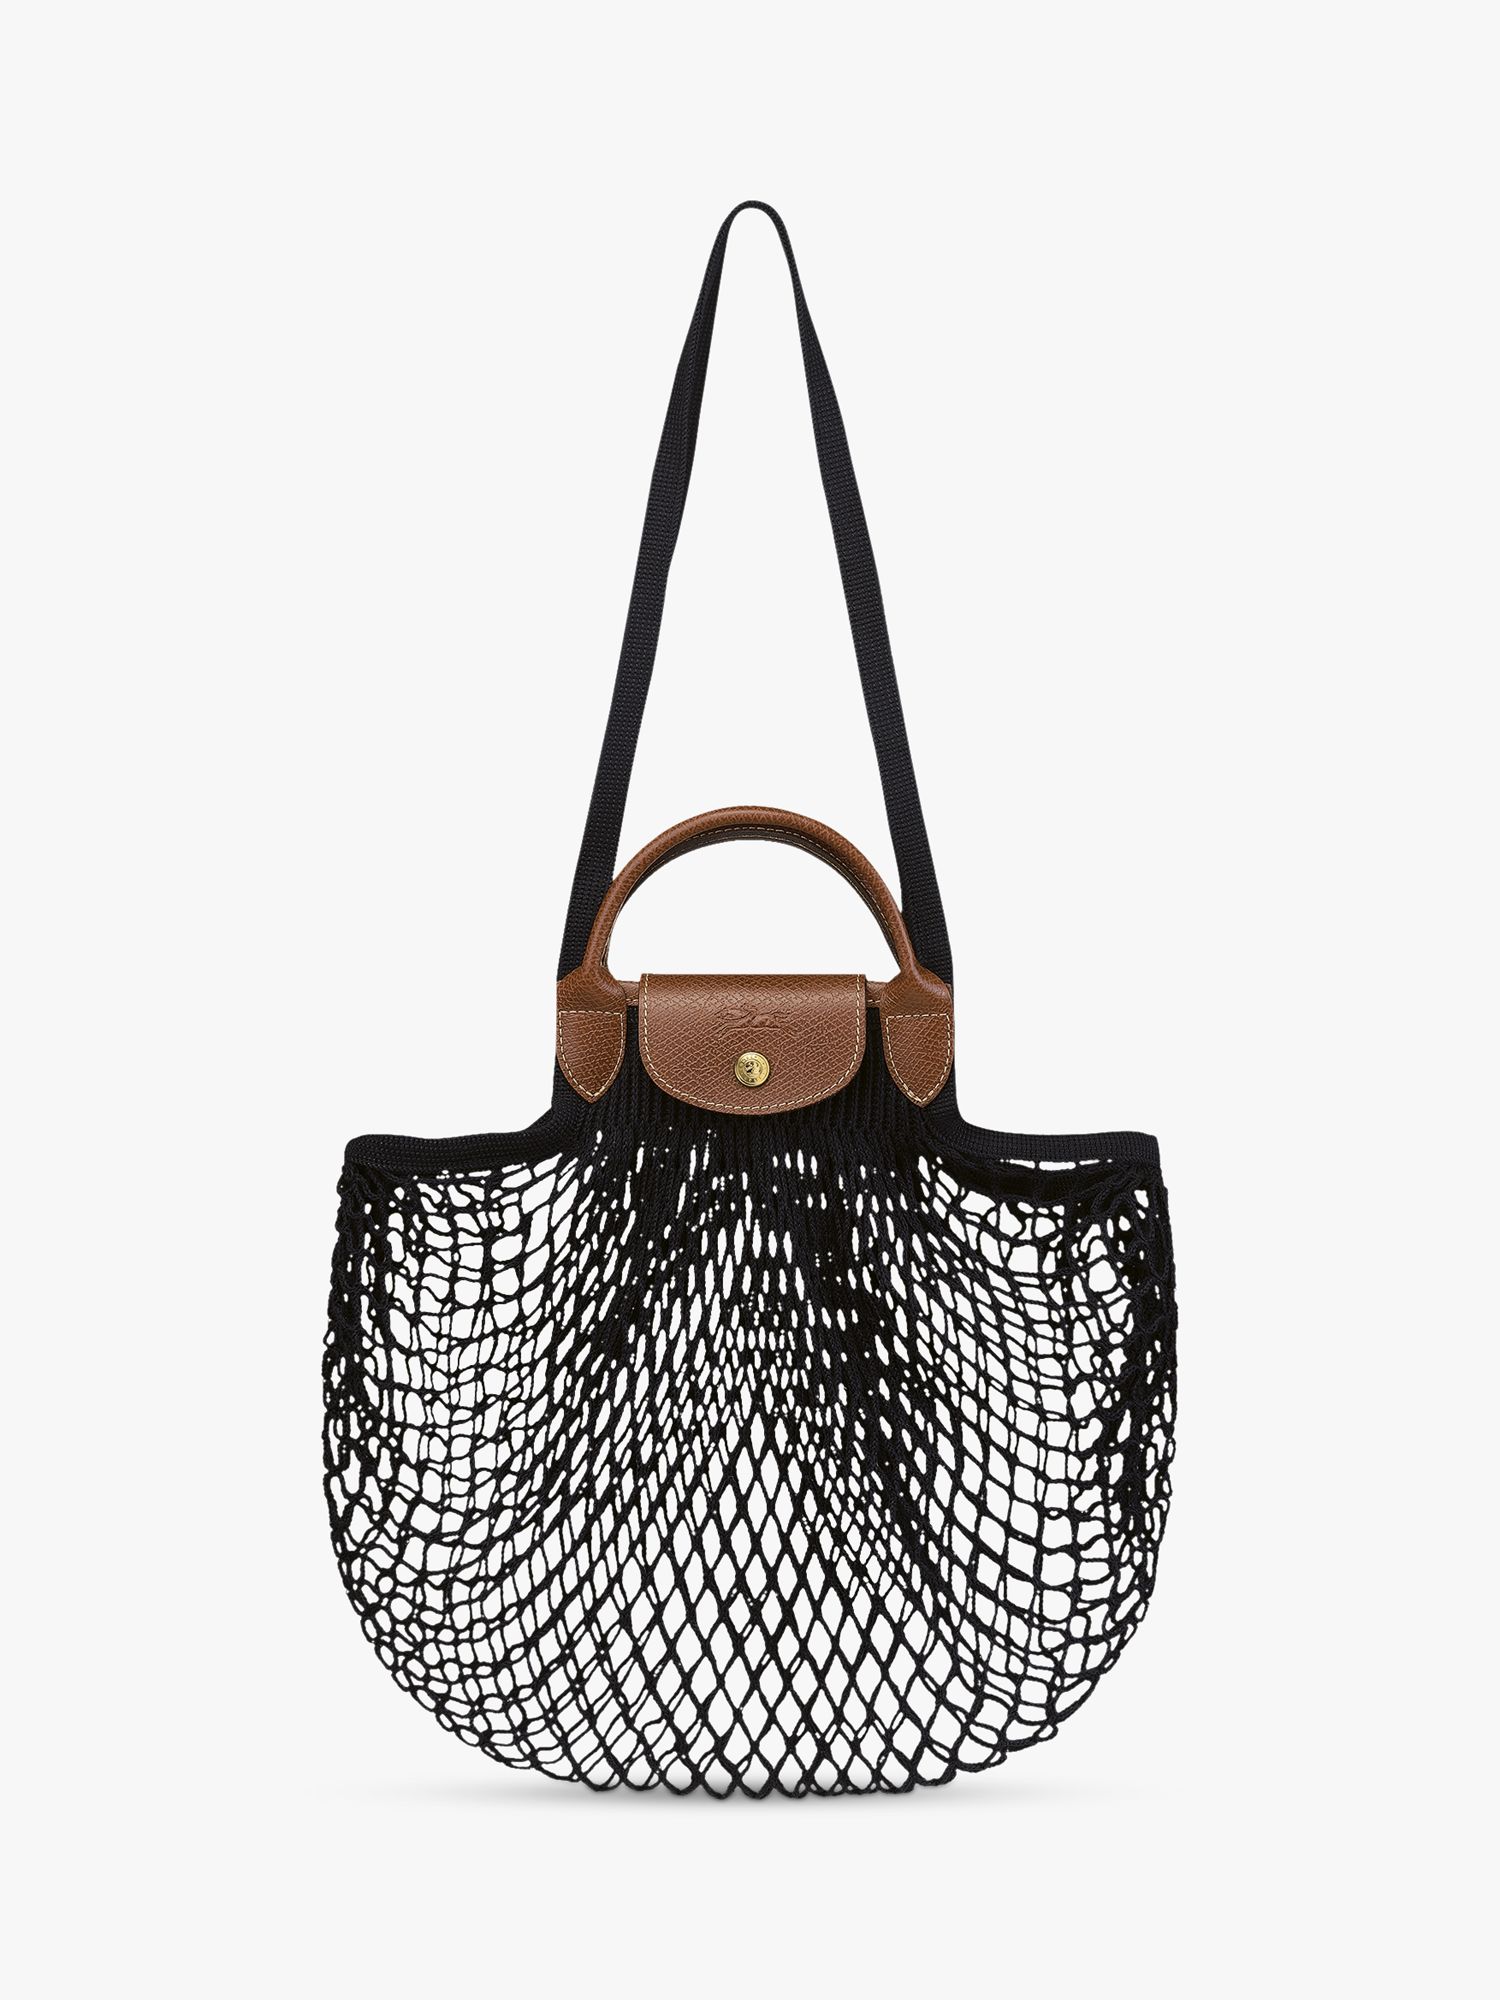 Longchamp Le Filet Bag Review